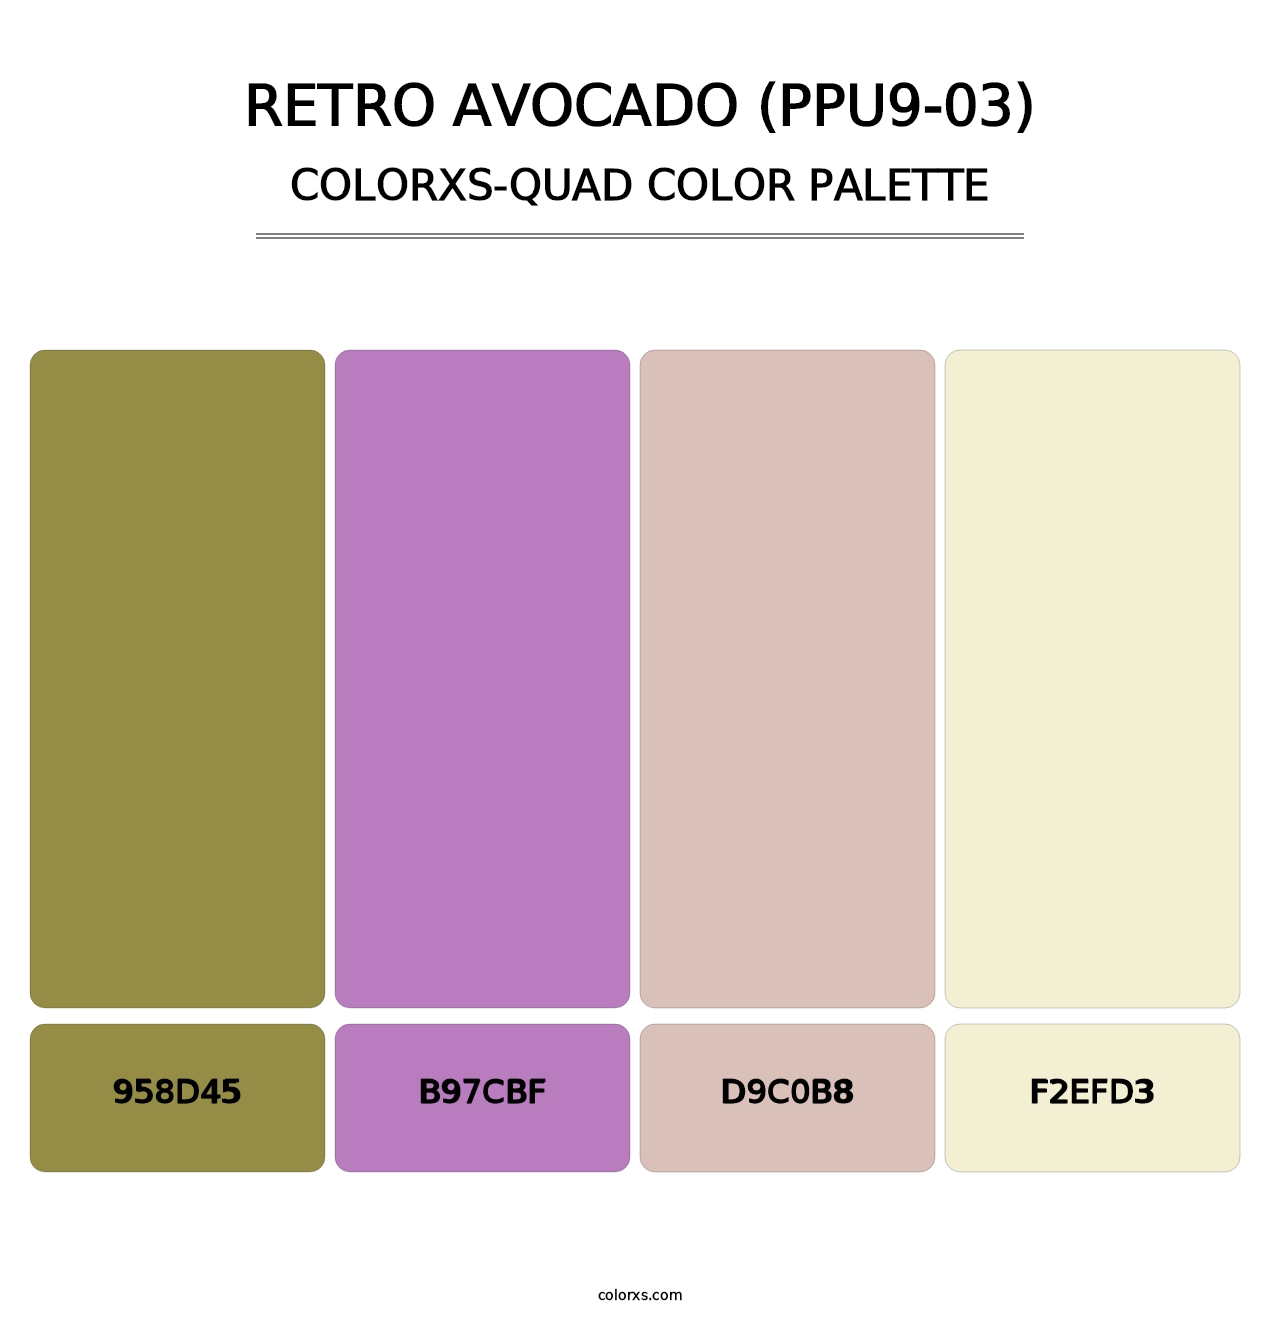 Retro Avocado (PPU9-03) - Colorxs Quad Palette